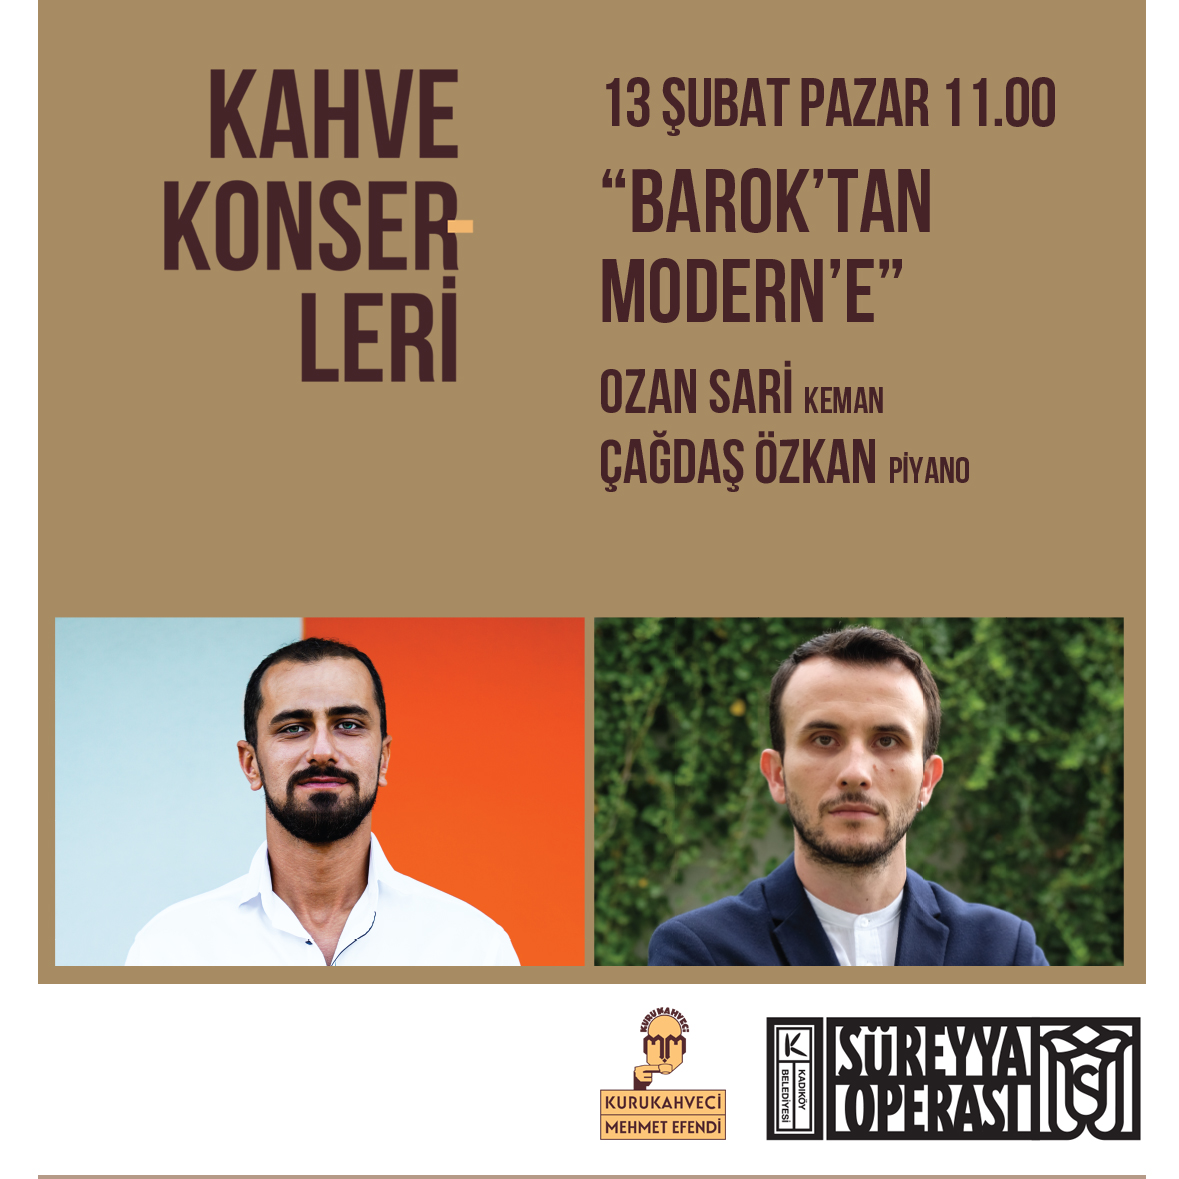 Kurukahveci Mehmet Efendi desteği ile gerçekleştirilen;  Süreyya Operası Kahve Konserleri 13 Şubat’a  Kemanda Ozan Sari, Piyanoda ise Çağdaş Özkan’ı ağırlayacak